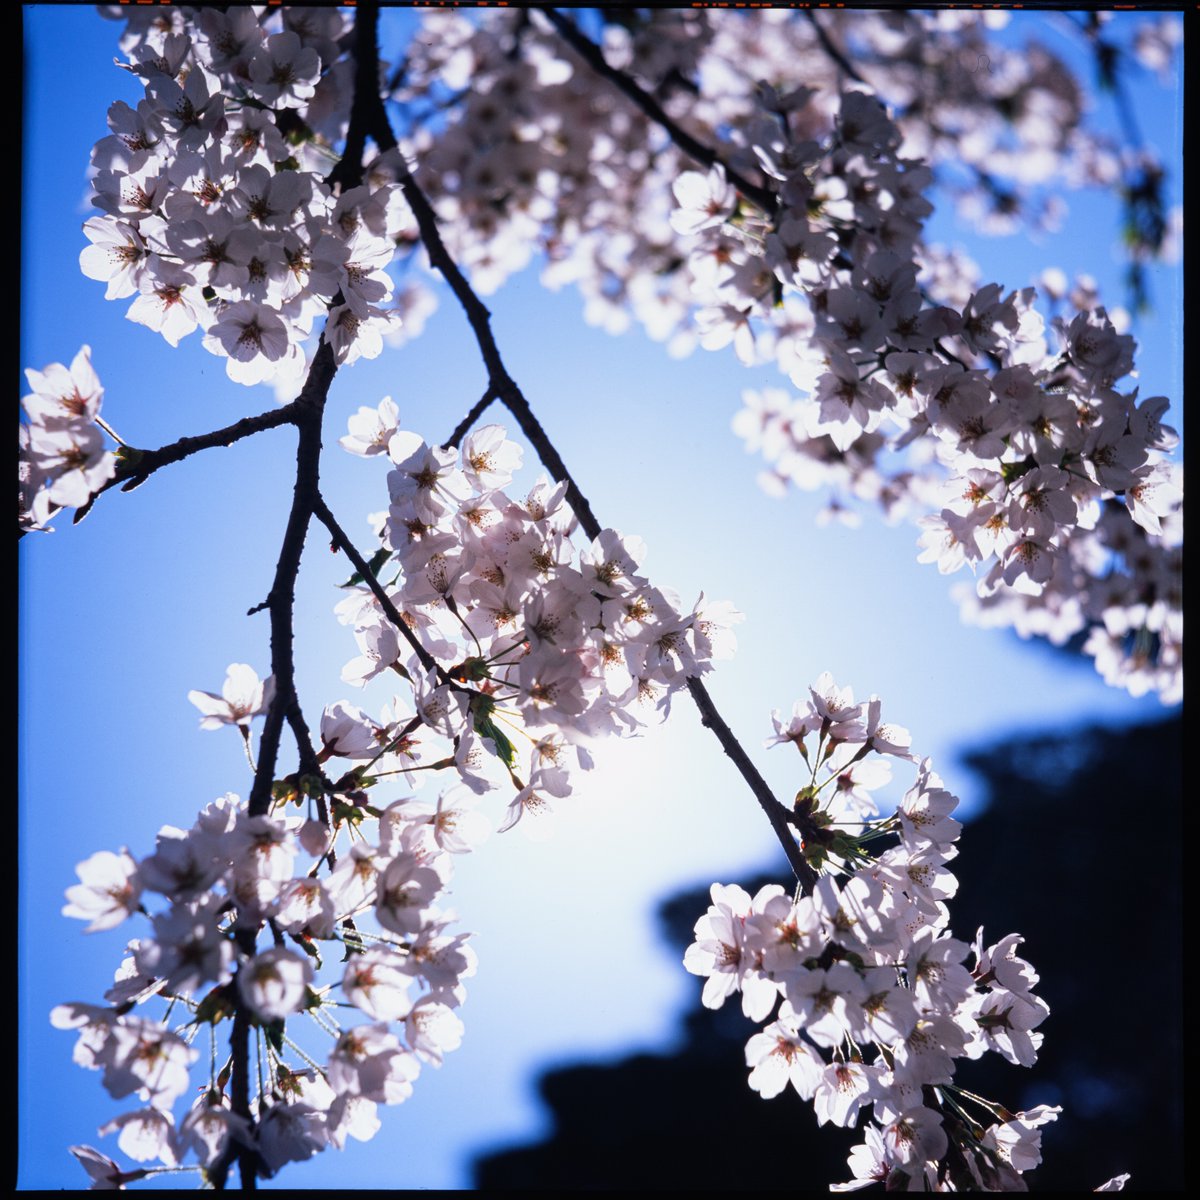 4月の桜が返ってきた。

PRIMOFLEX + Velvia50